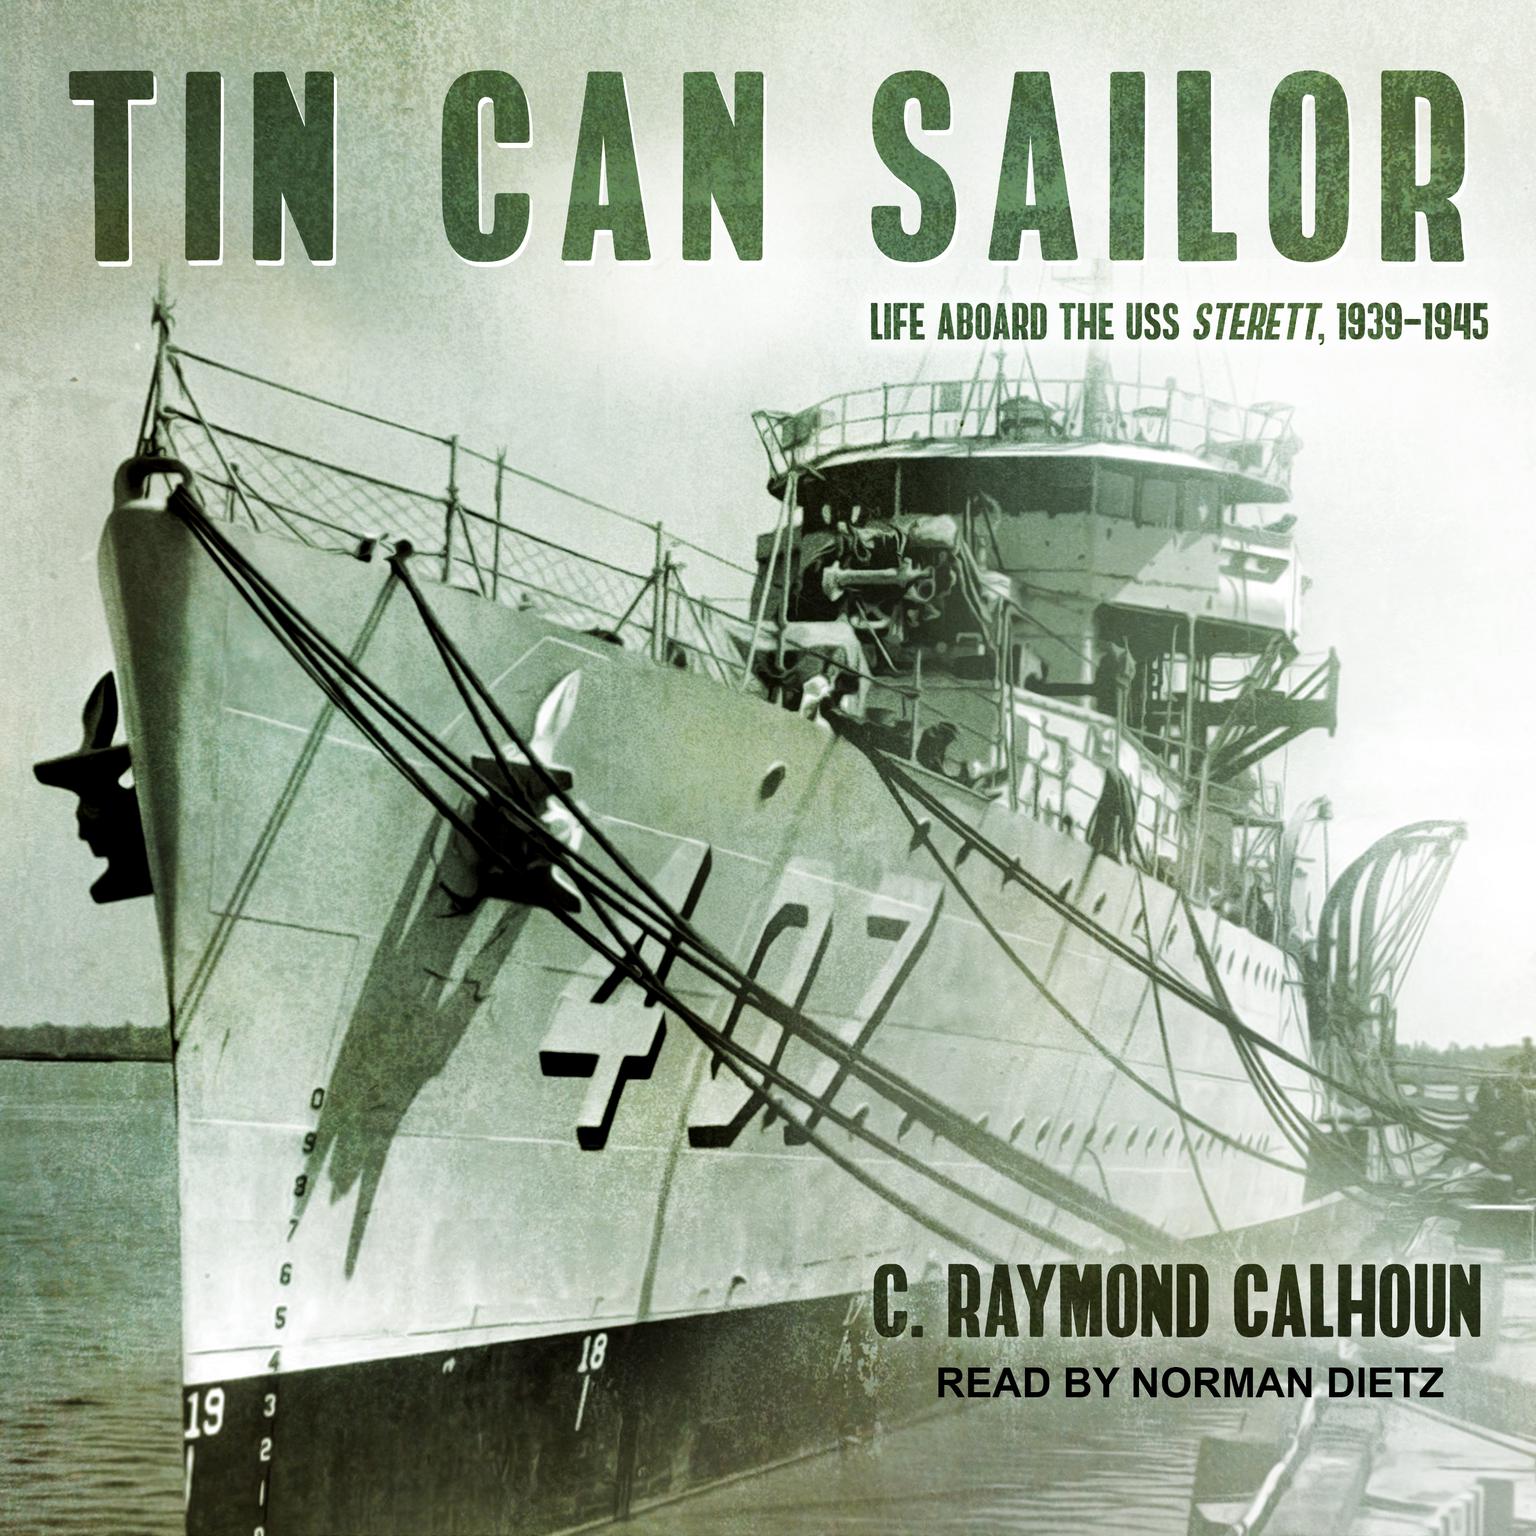 Tin Can Sailor: Life Aboard the USS Sterett, 1939-1945 Audiobook, by C. Raymond Calhoun